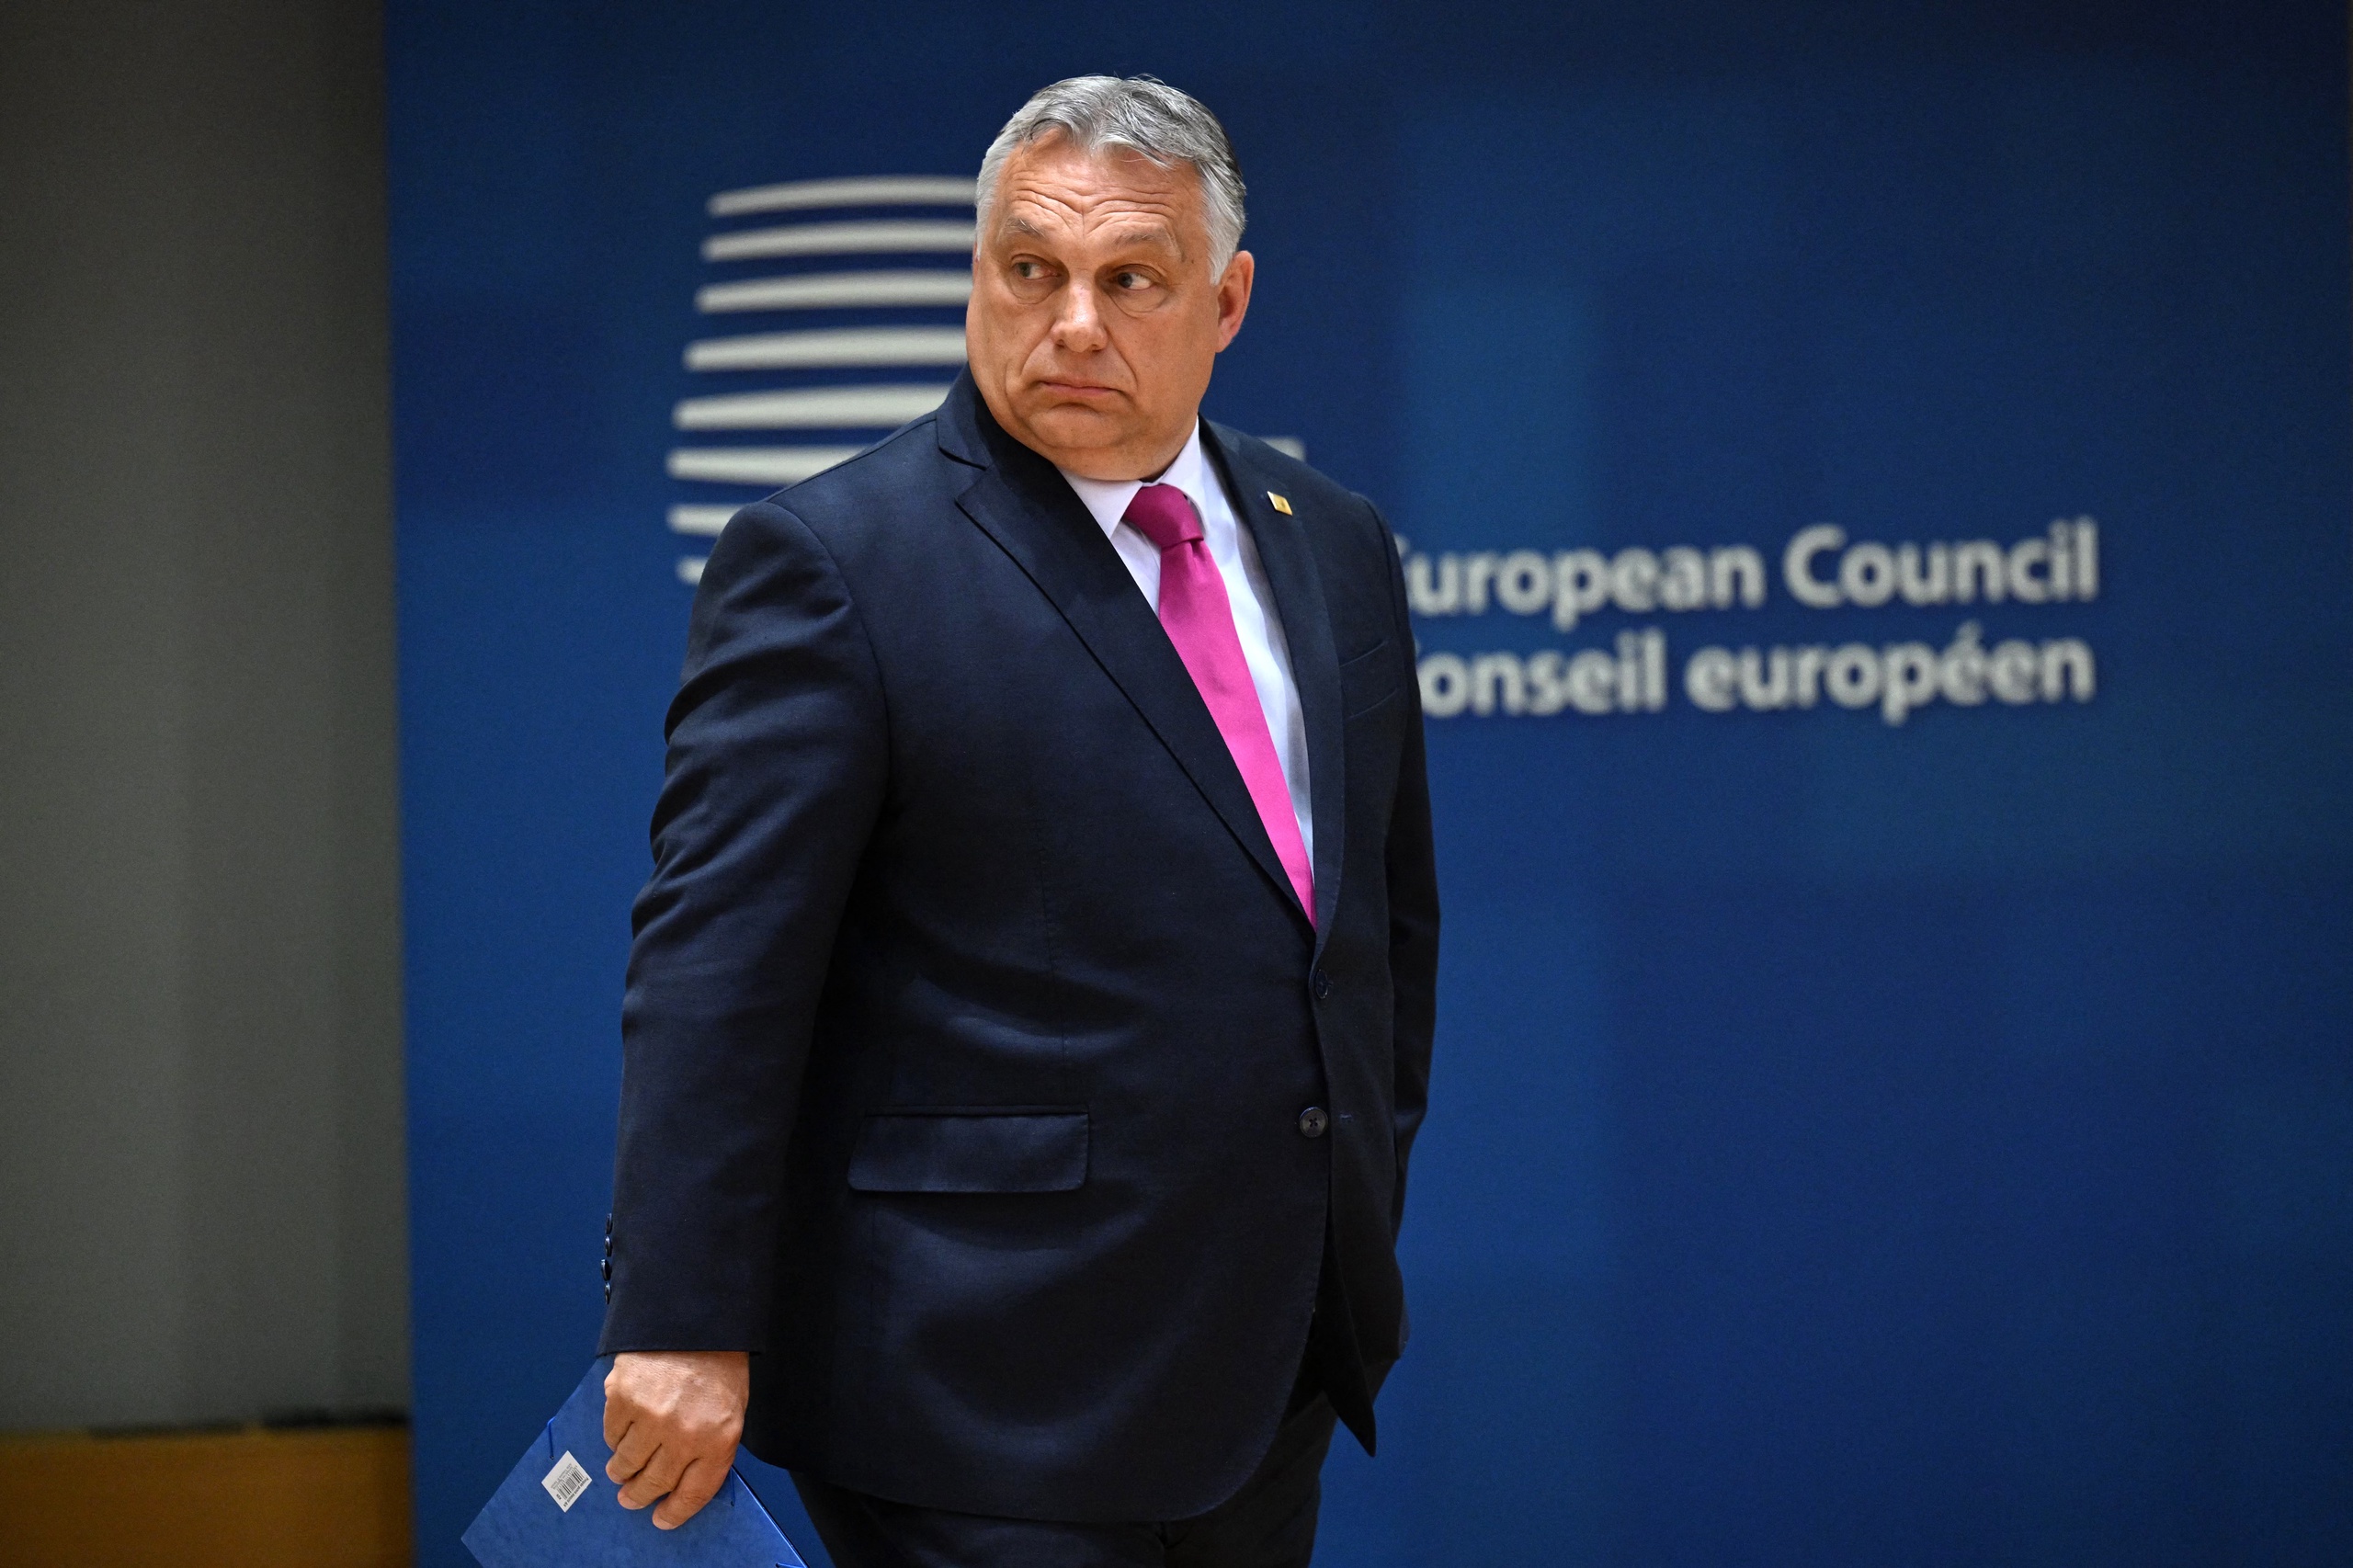 Het EU-parlement keurde een rapport over Hongarije goed met als conclusie dat er weliswaar verkiezingen in het land plaatsvinden maar de macht in feite bij slechts één persoon ligt, namelijk premier Viktor Orbán